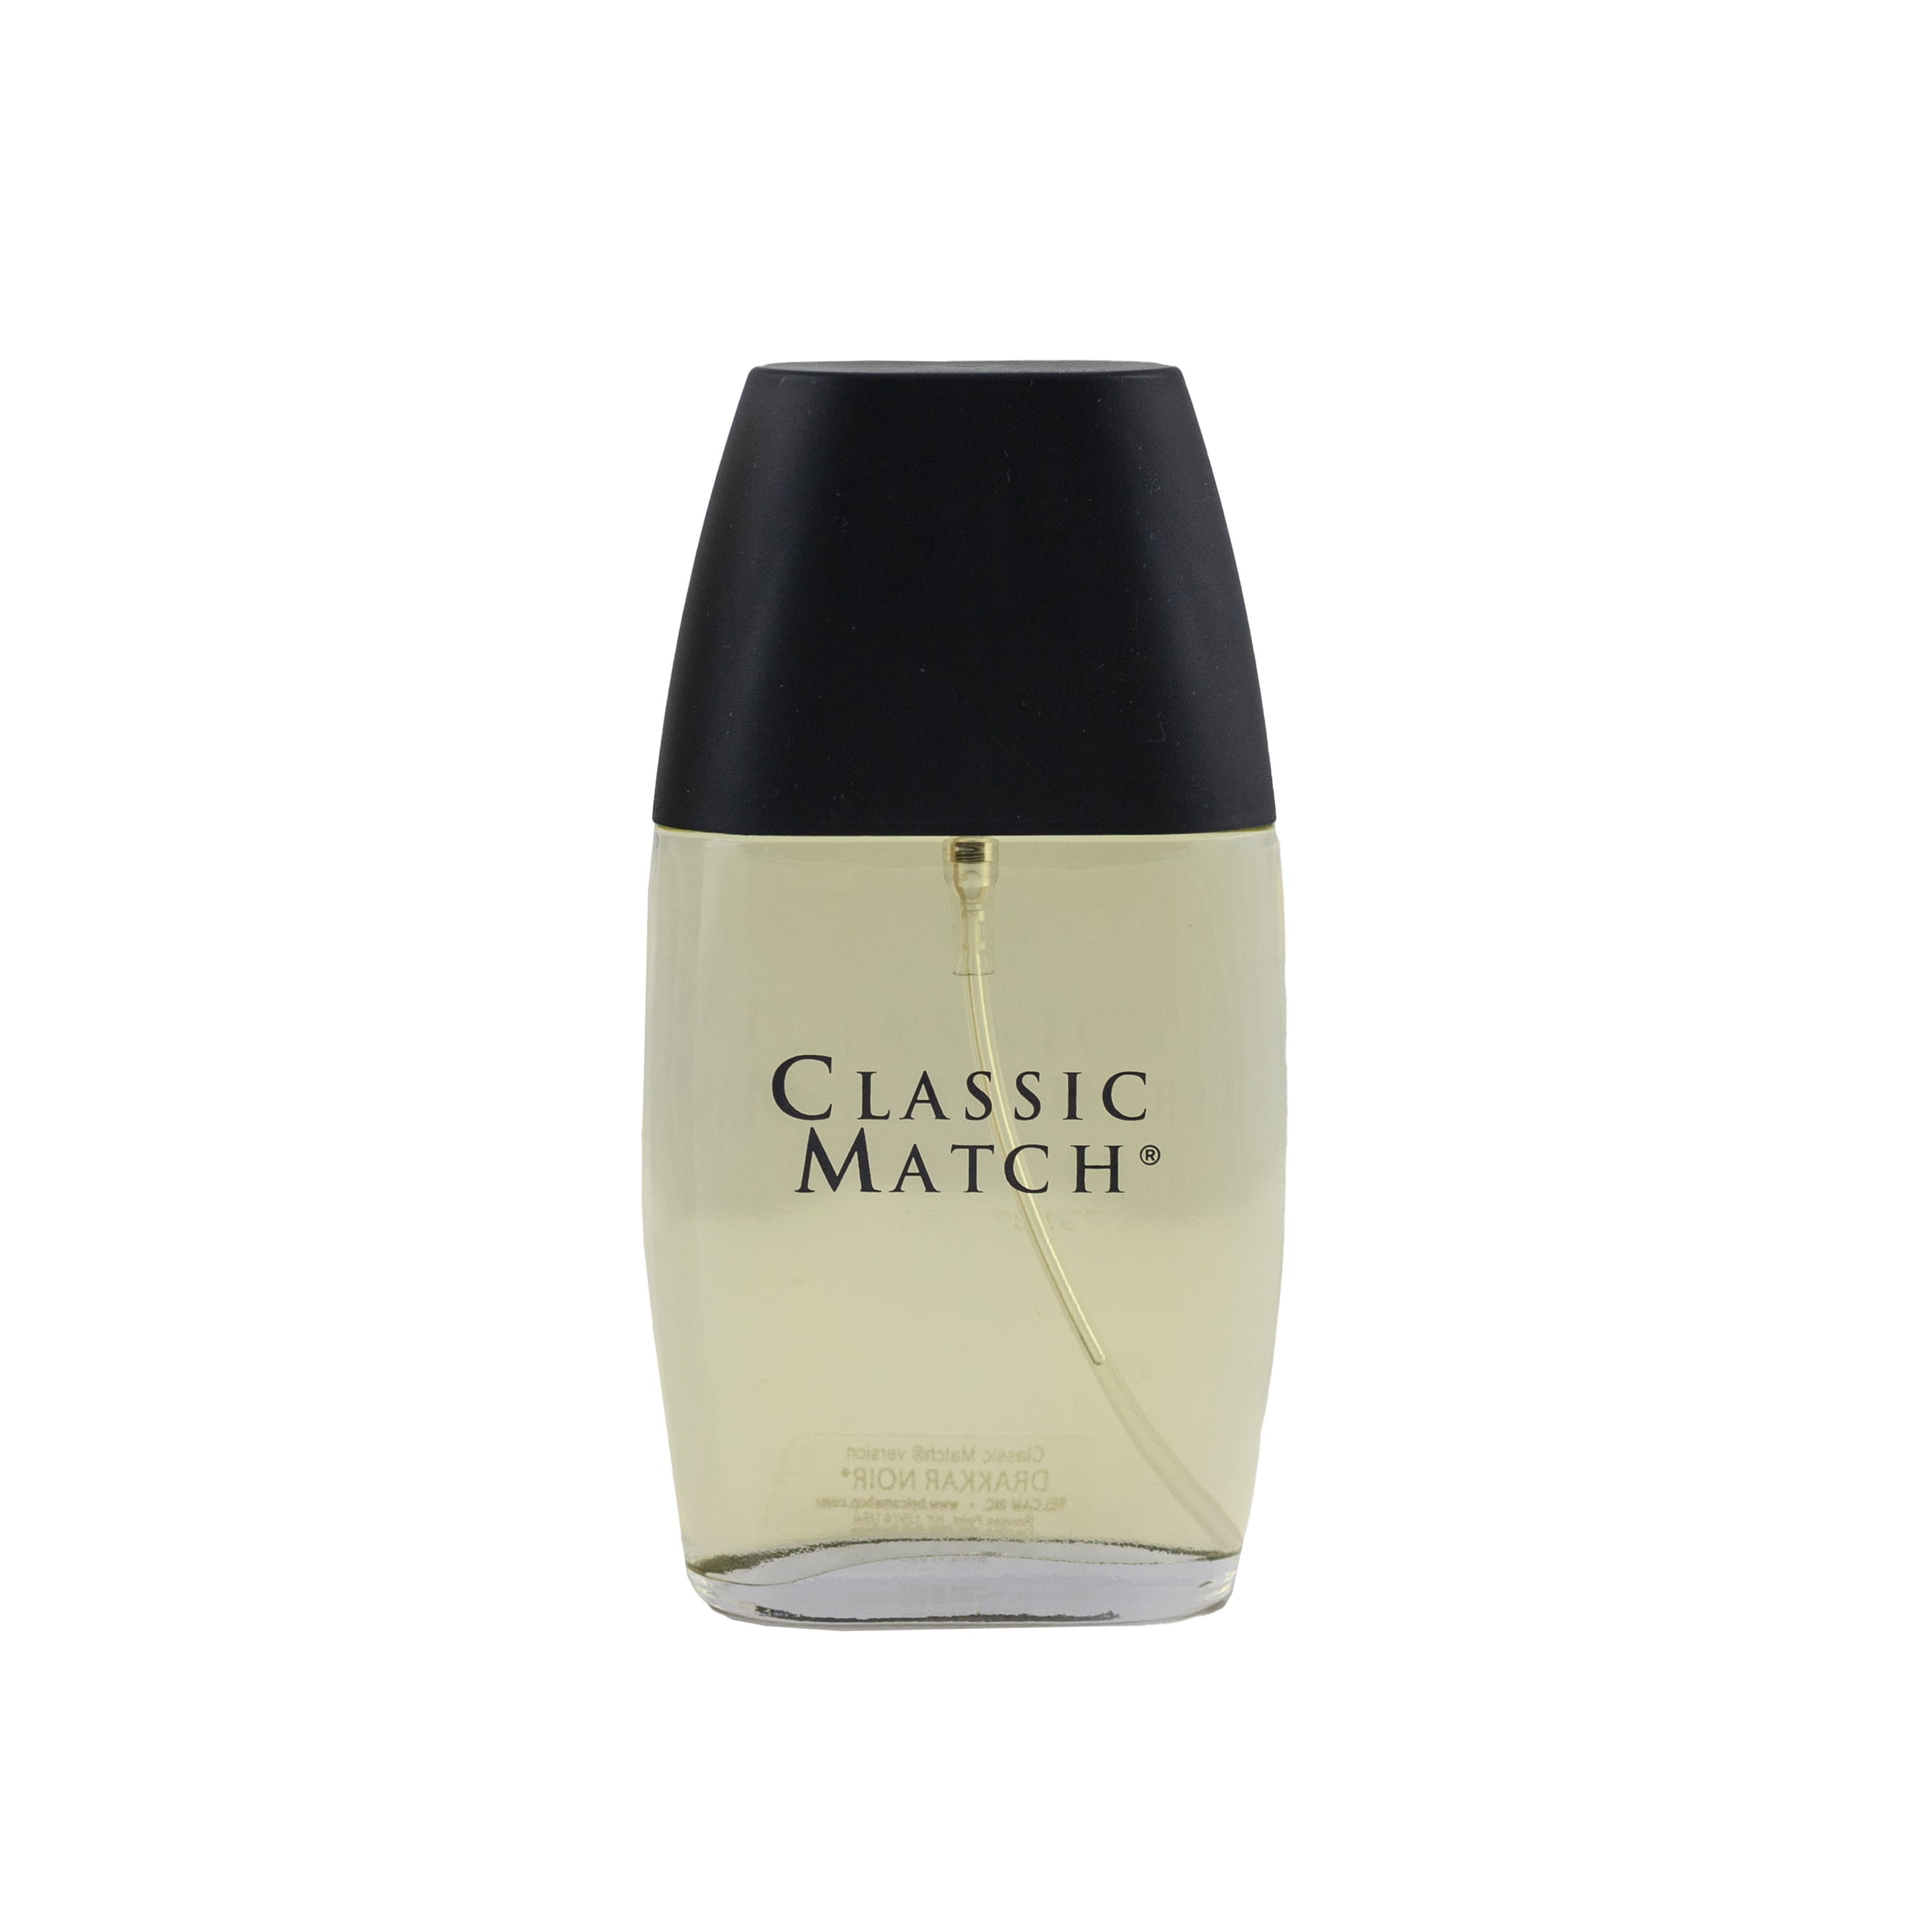 Parfums Belcam Classic Match Eau de Toilette, Cologne for Men, 2.5 oz